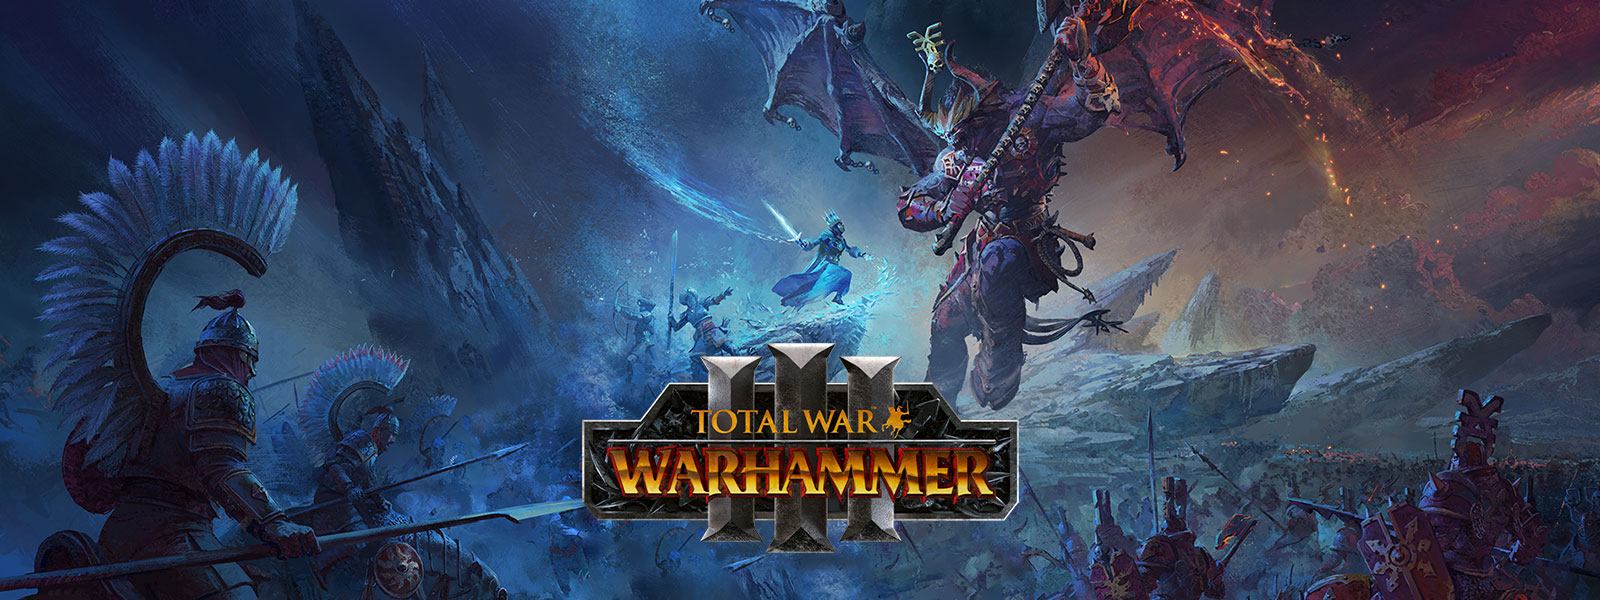 Total War: WARHAMMER III, un mago del ghiaccio affronta un enorme demone drago sopra un campo di battaglia.